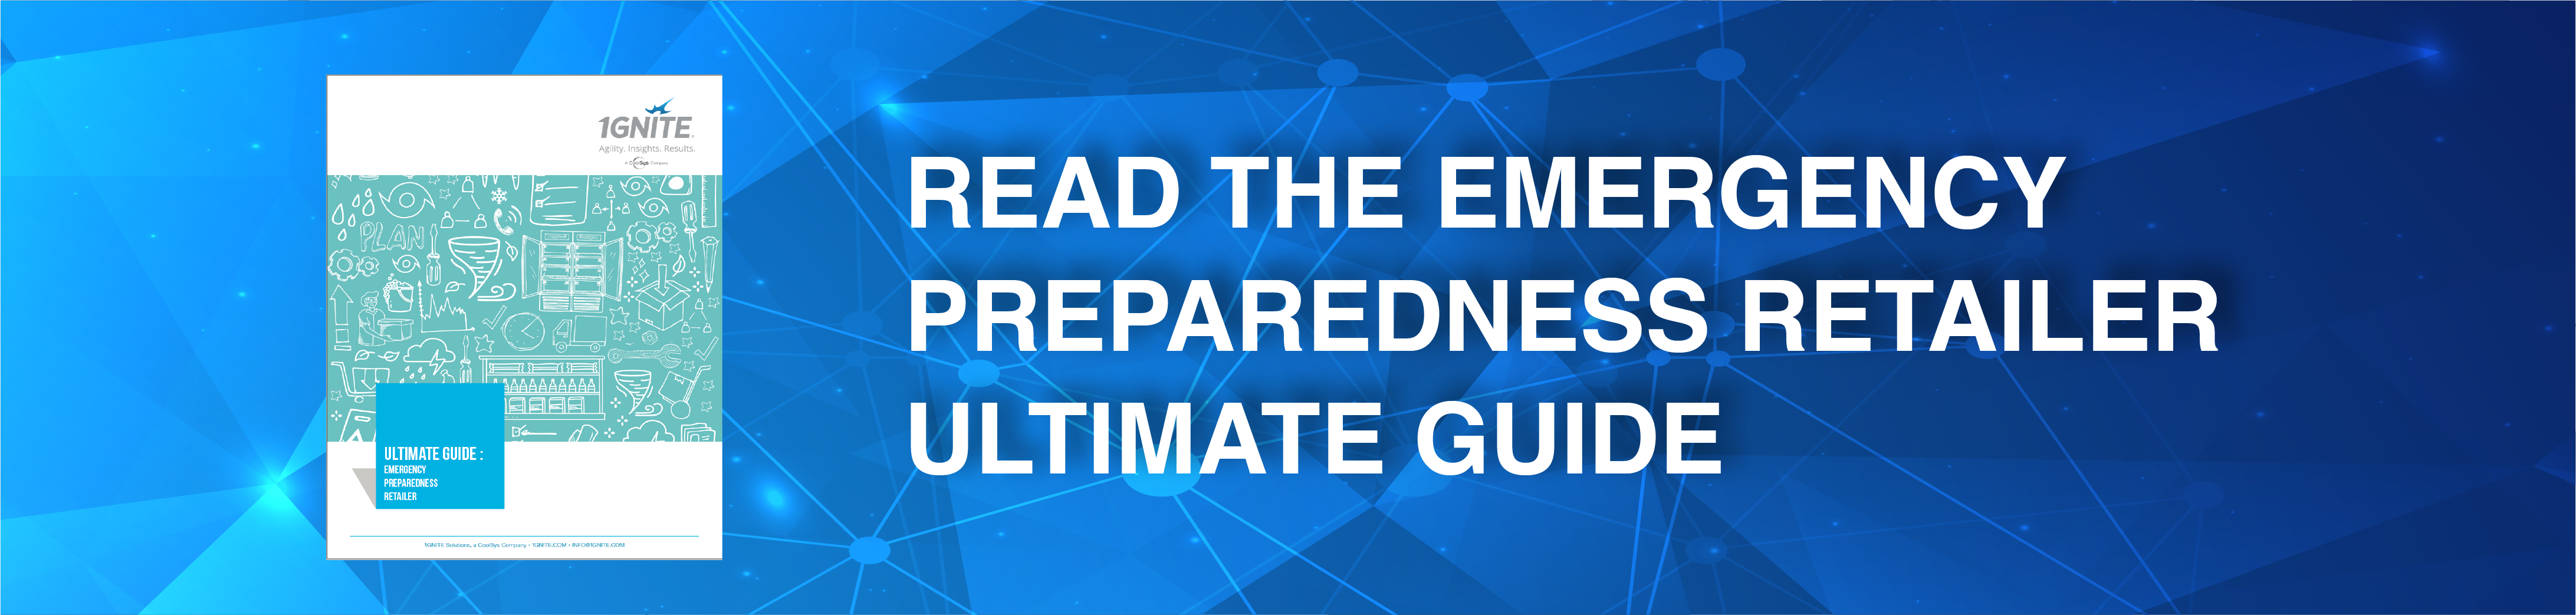 Read the Emergency Preparedness Retailer 1GNITE Ultimate Guide